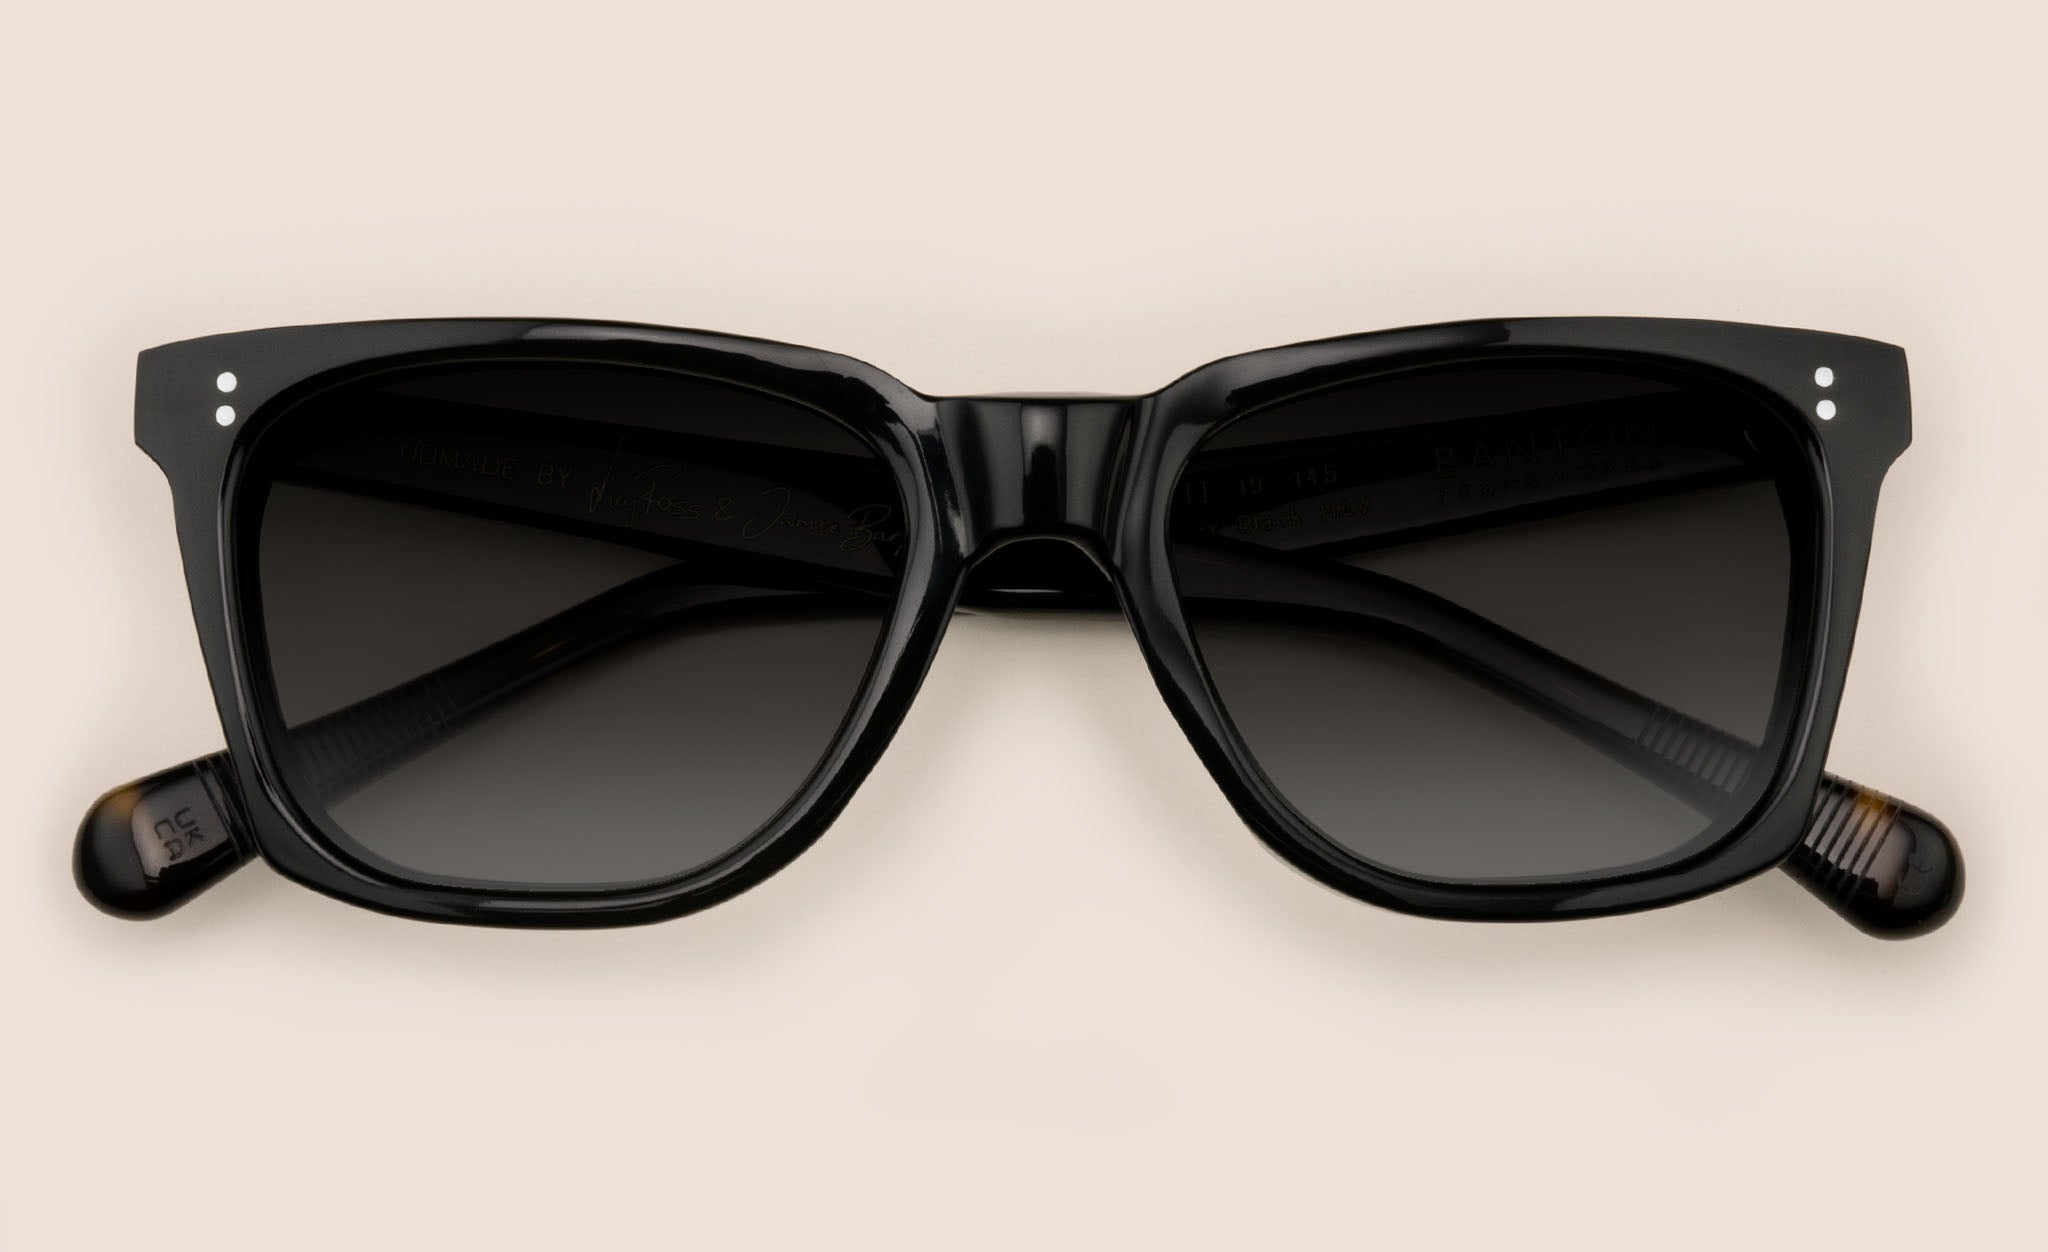 Rectangular sunglasses frame with dark grey lenses